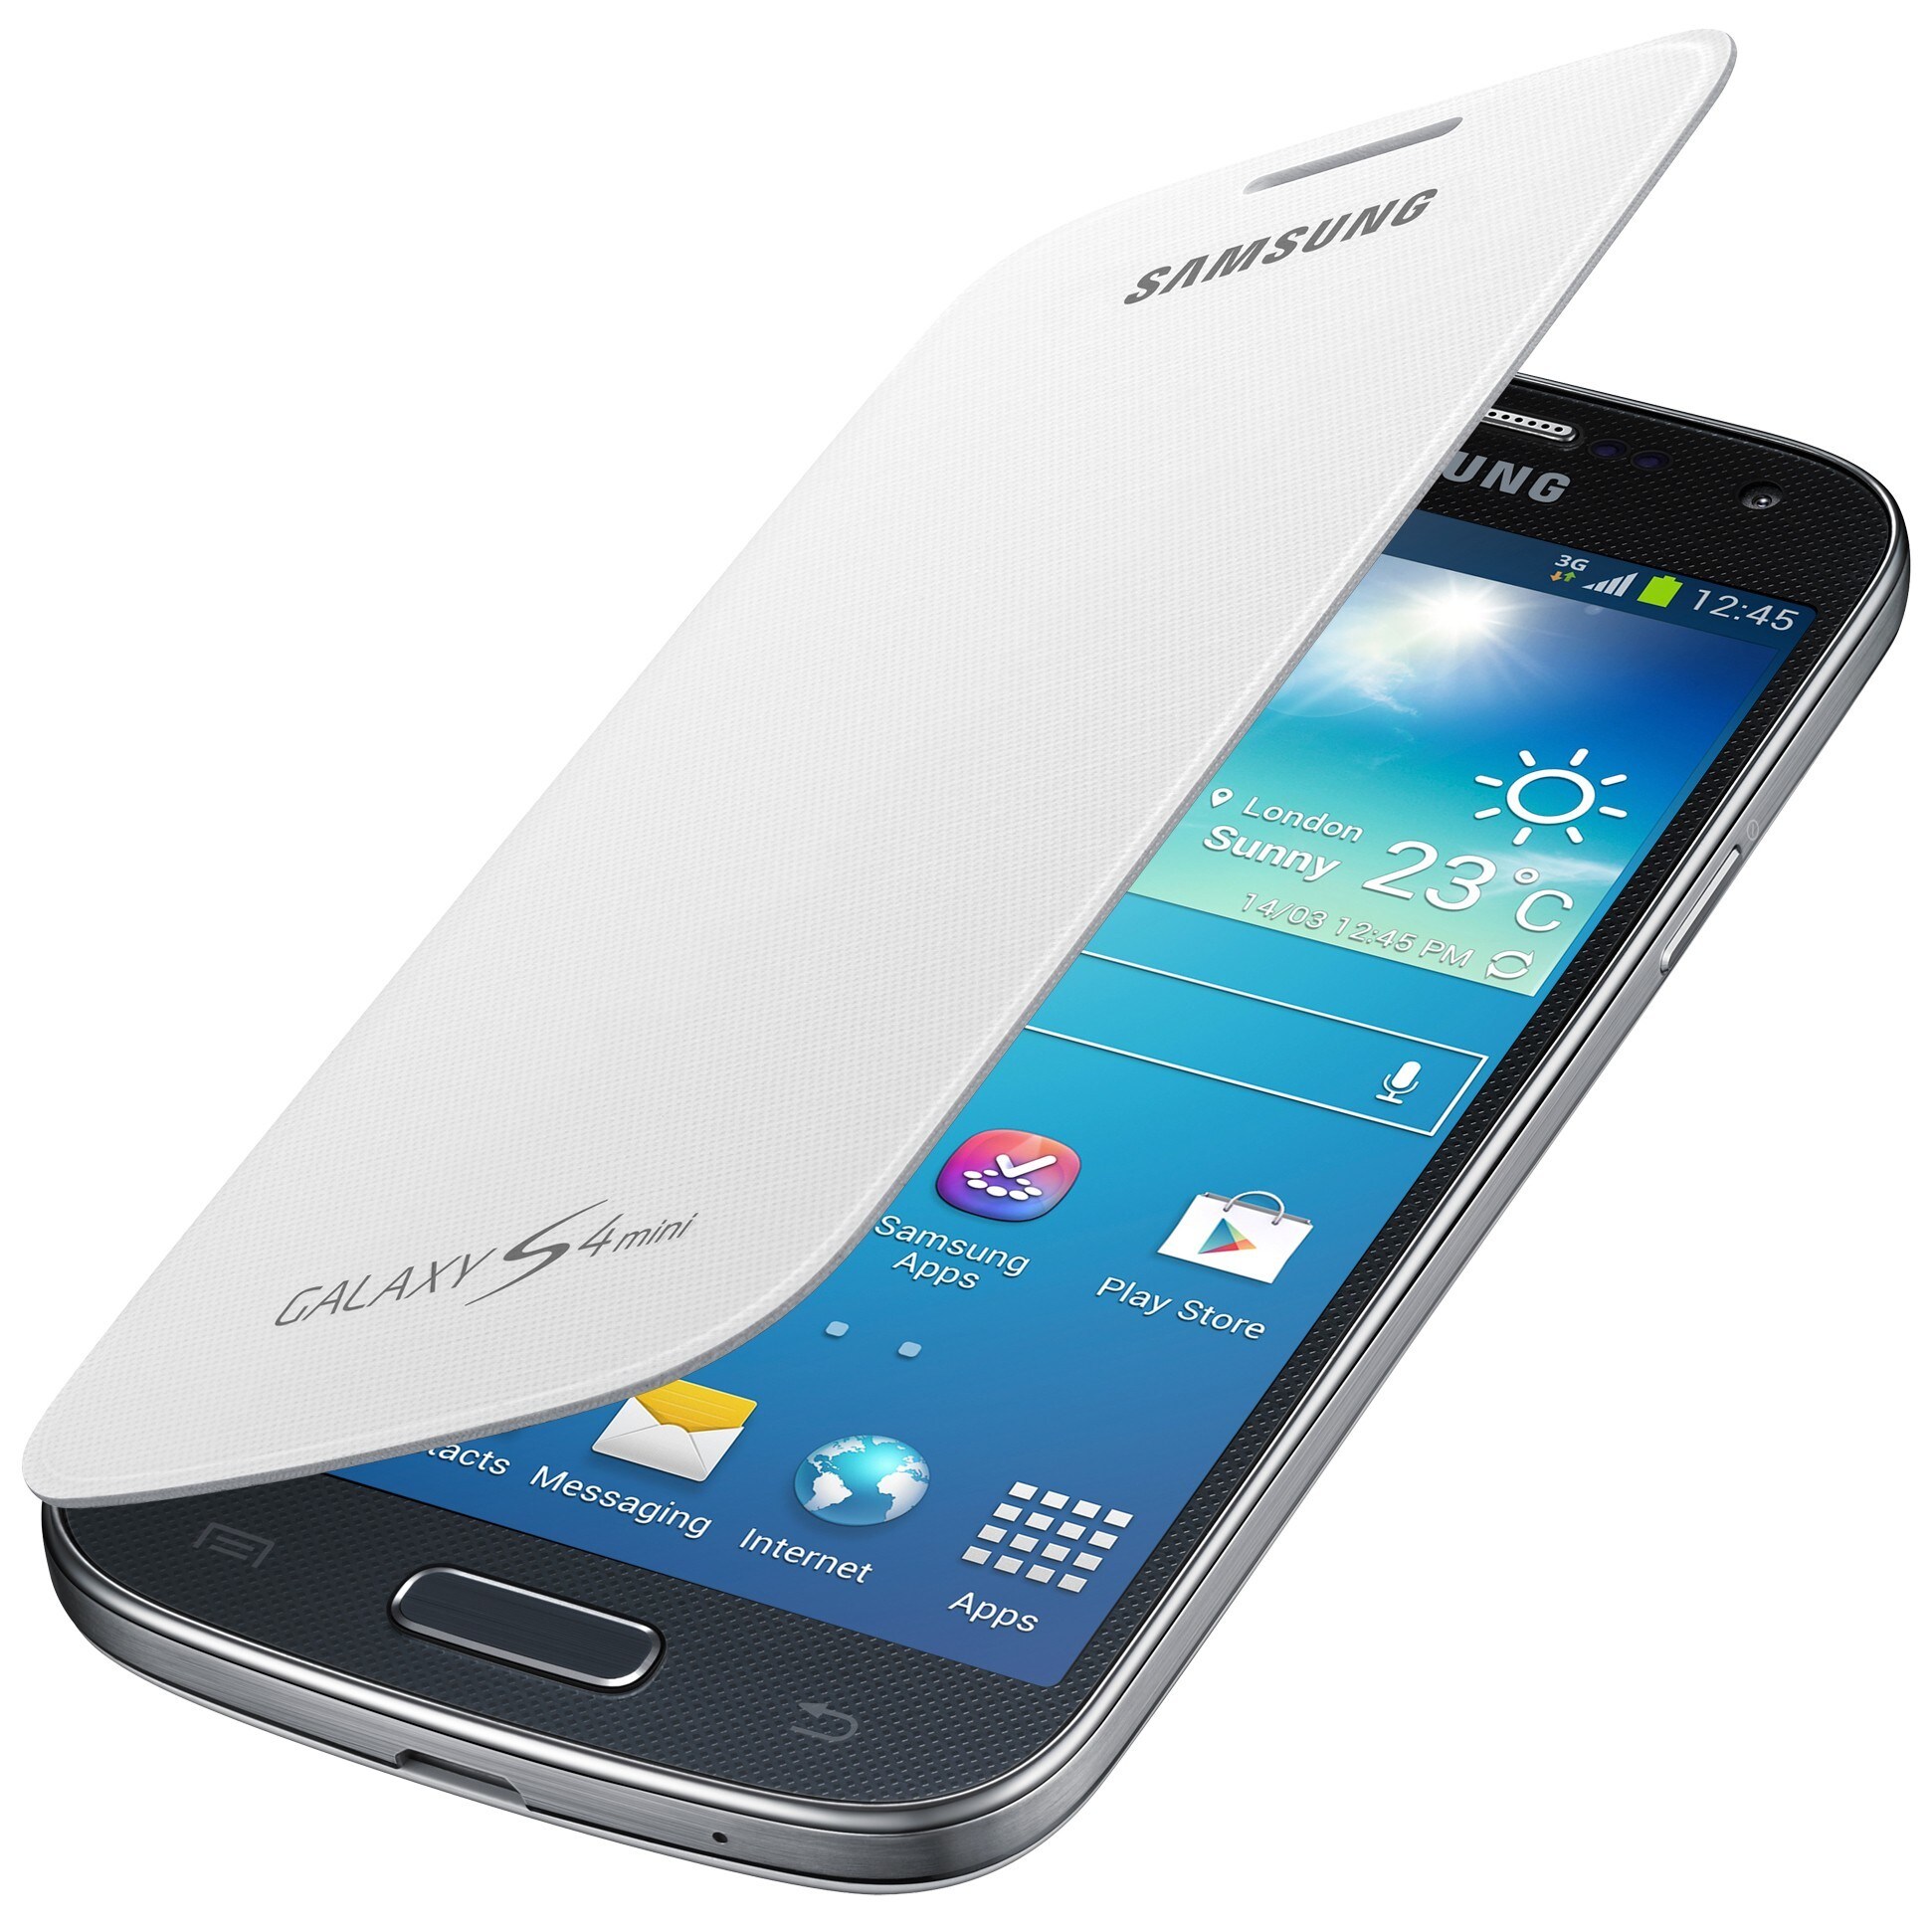 Samsung galaxy s4 elkjøp